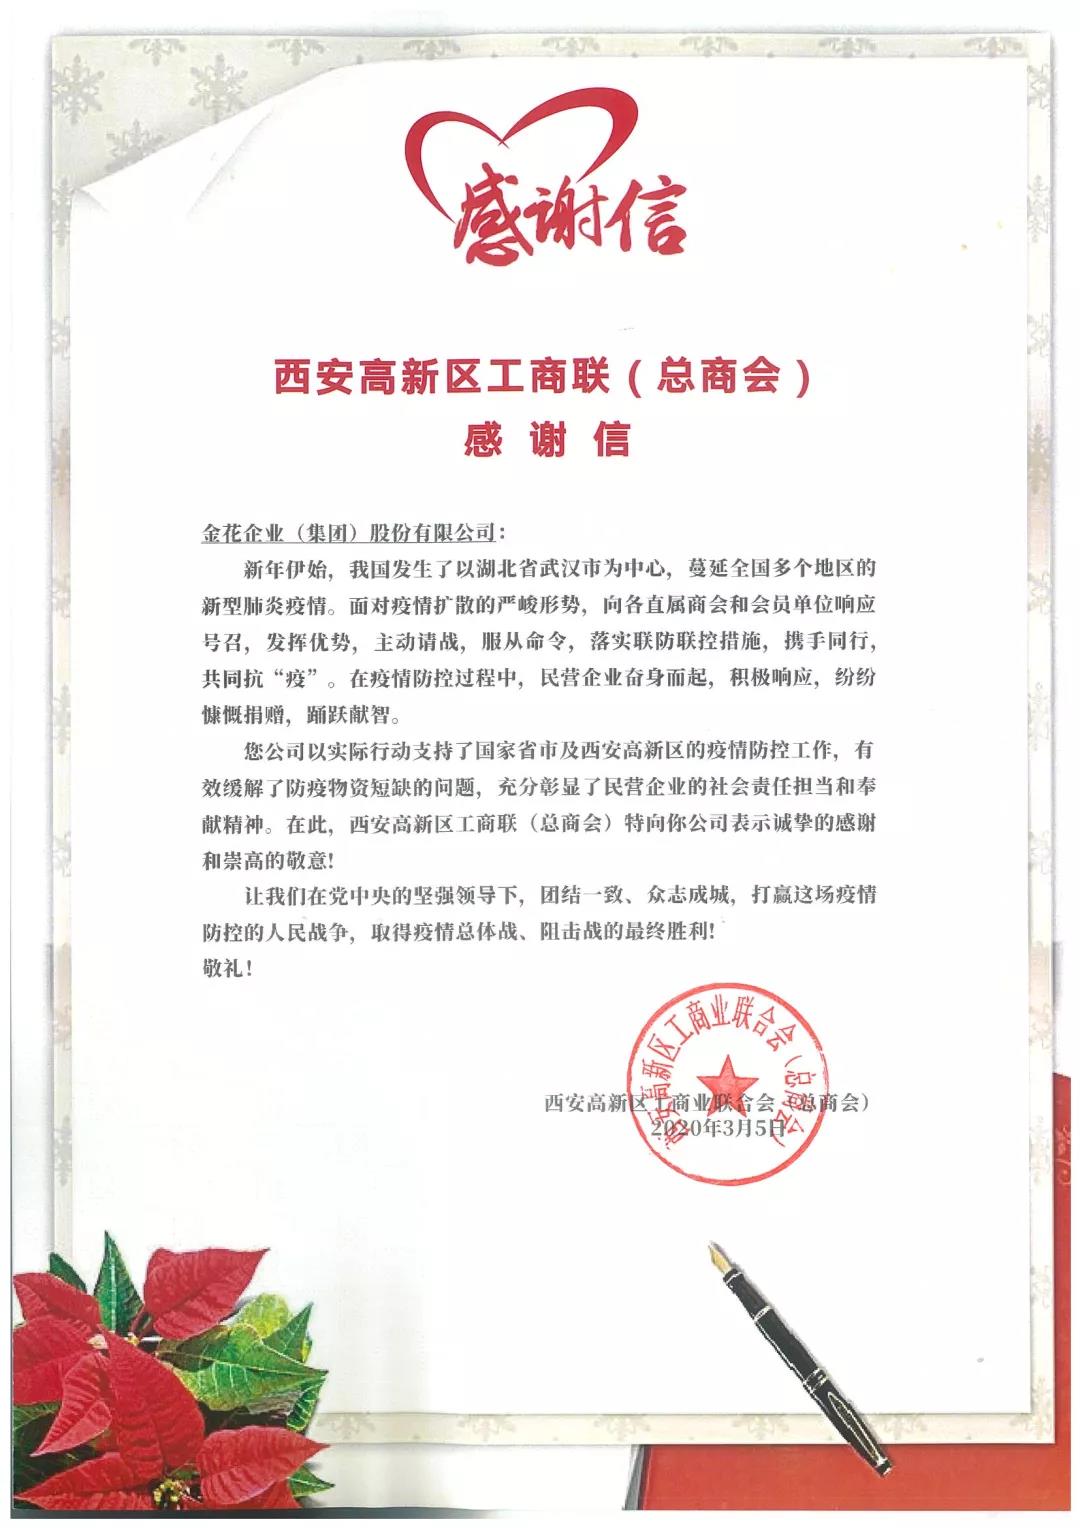 中共西安高新区工委统战部向9297威尼斯至尊品质颁发抗疫表彰锦旗